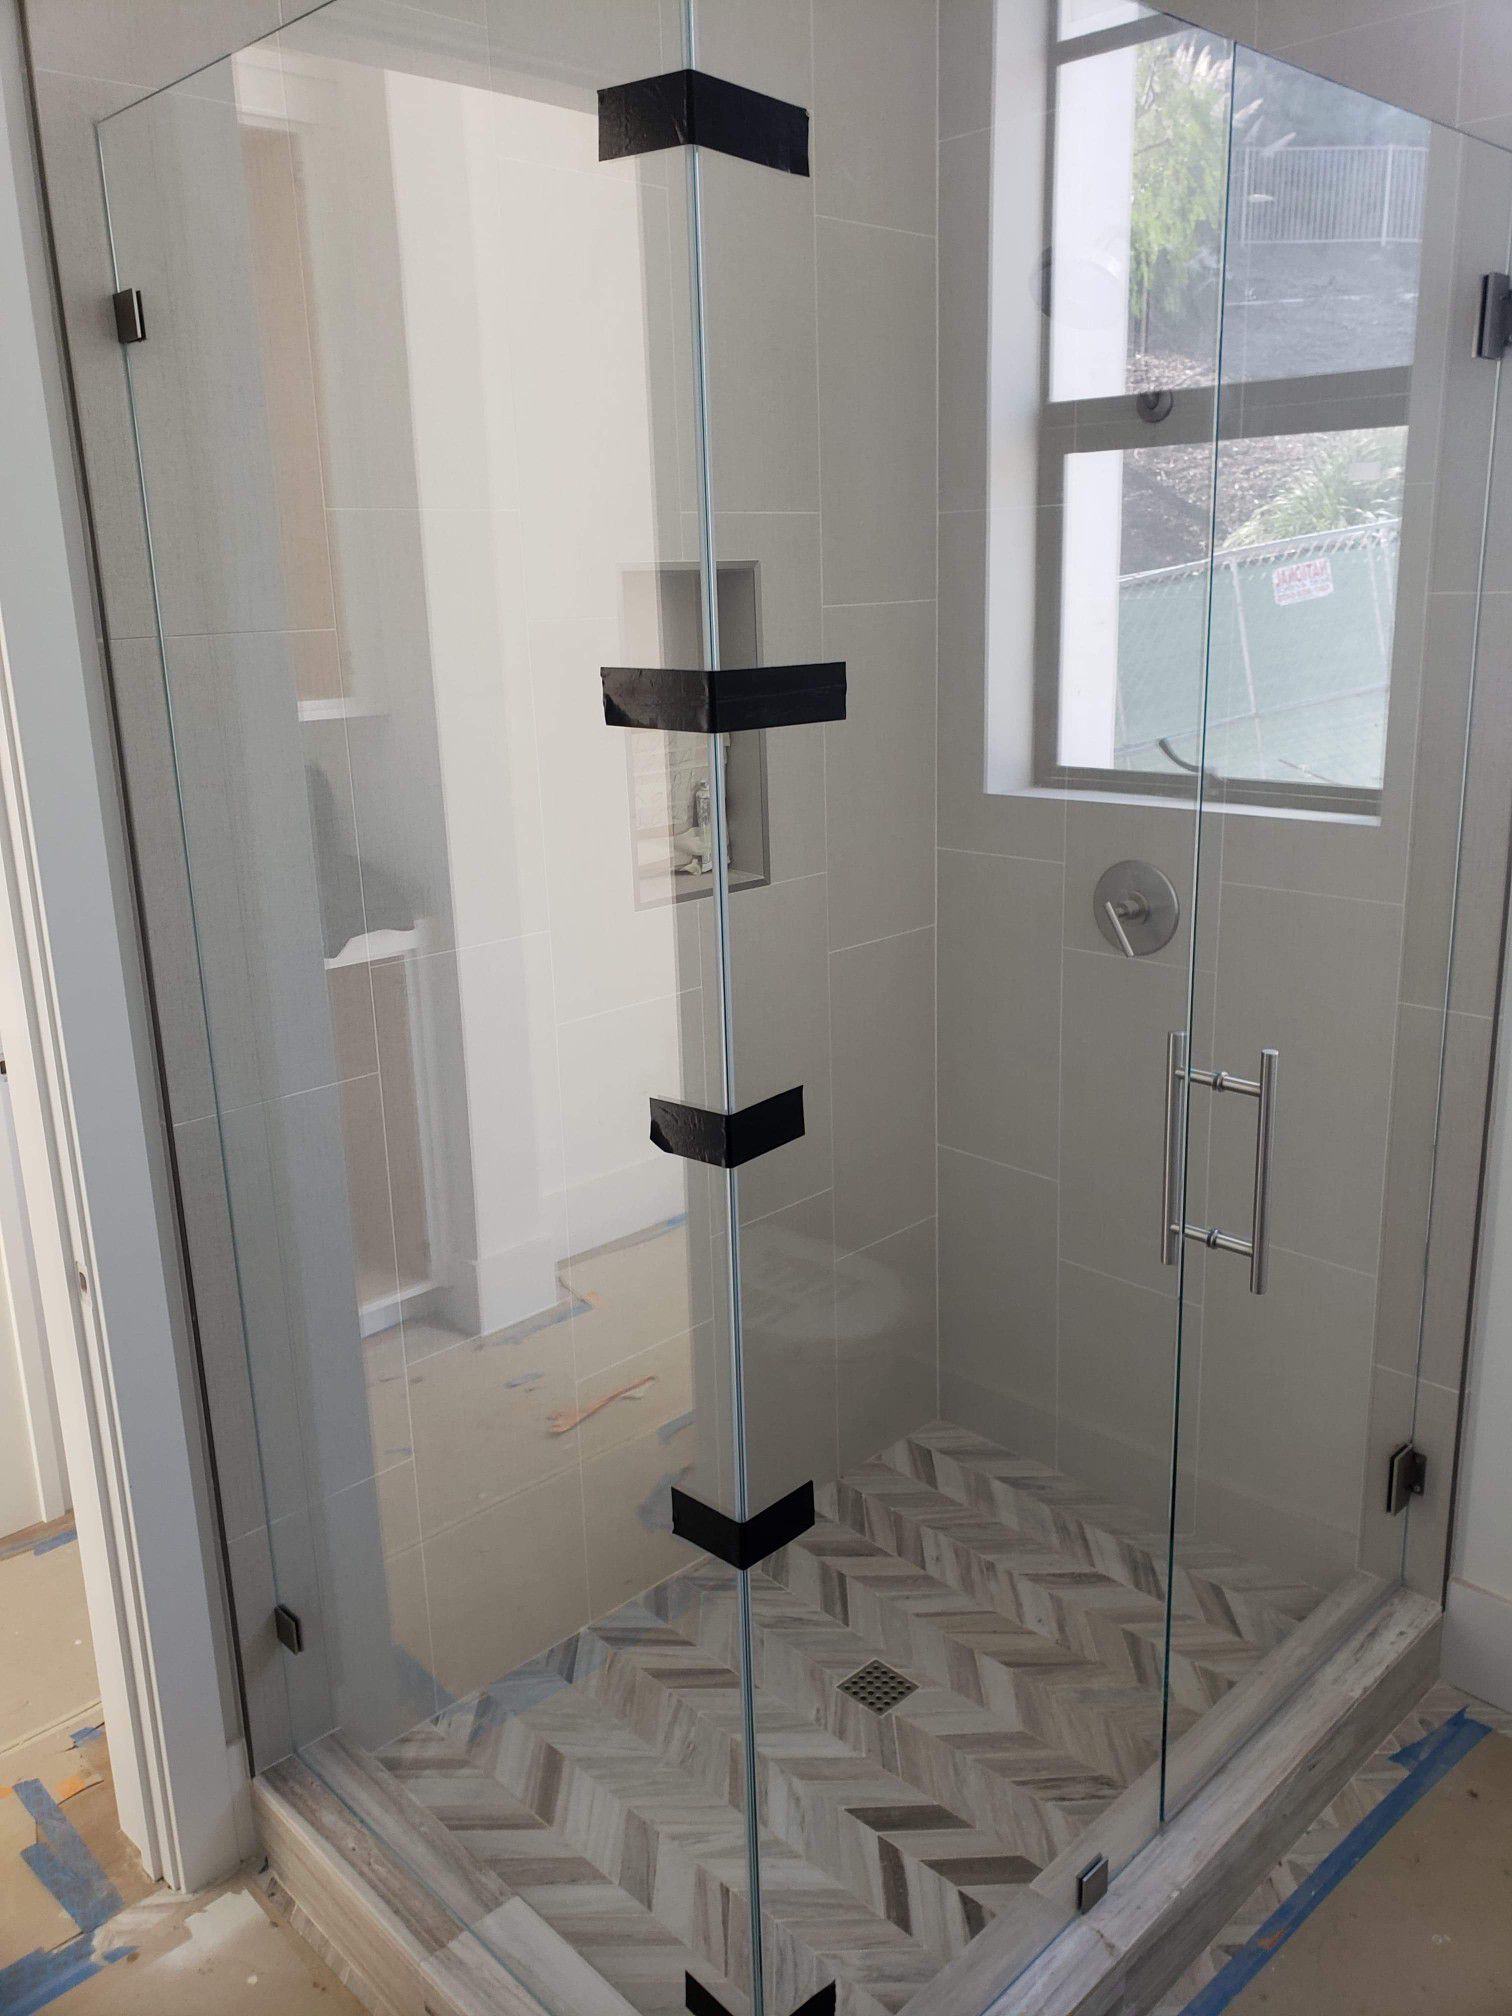 Frameless shower door glass